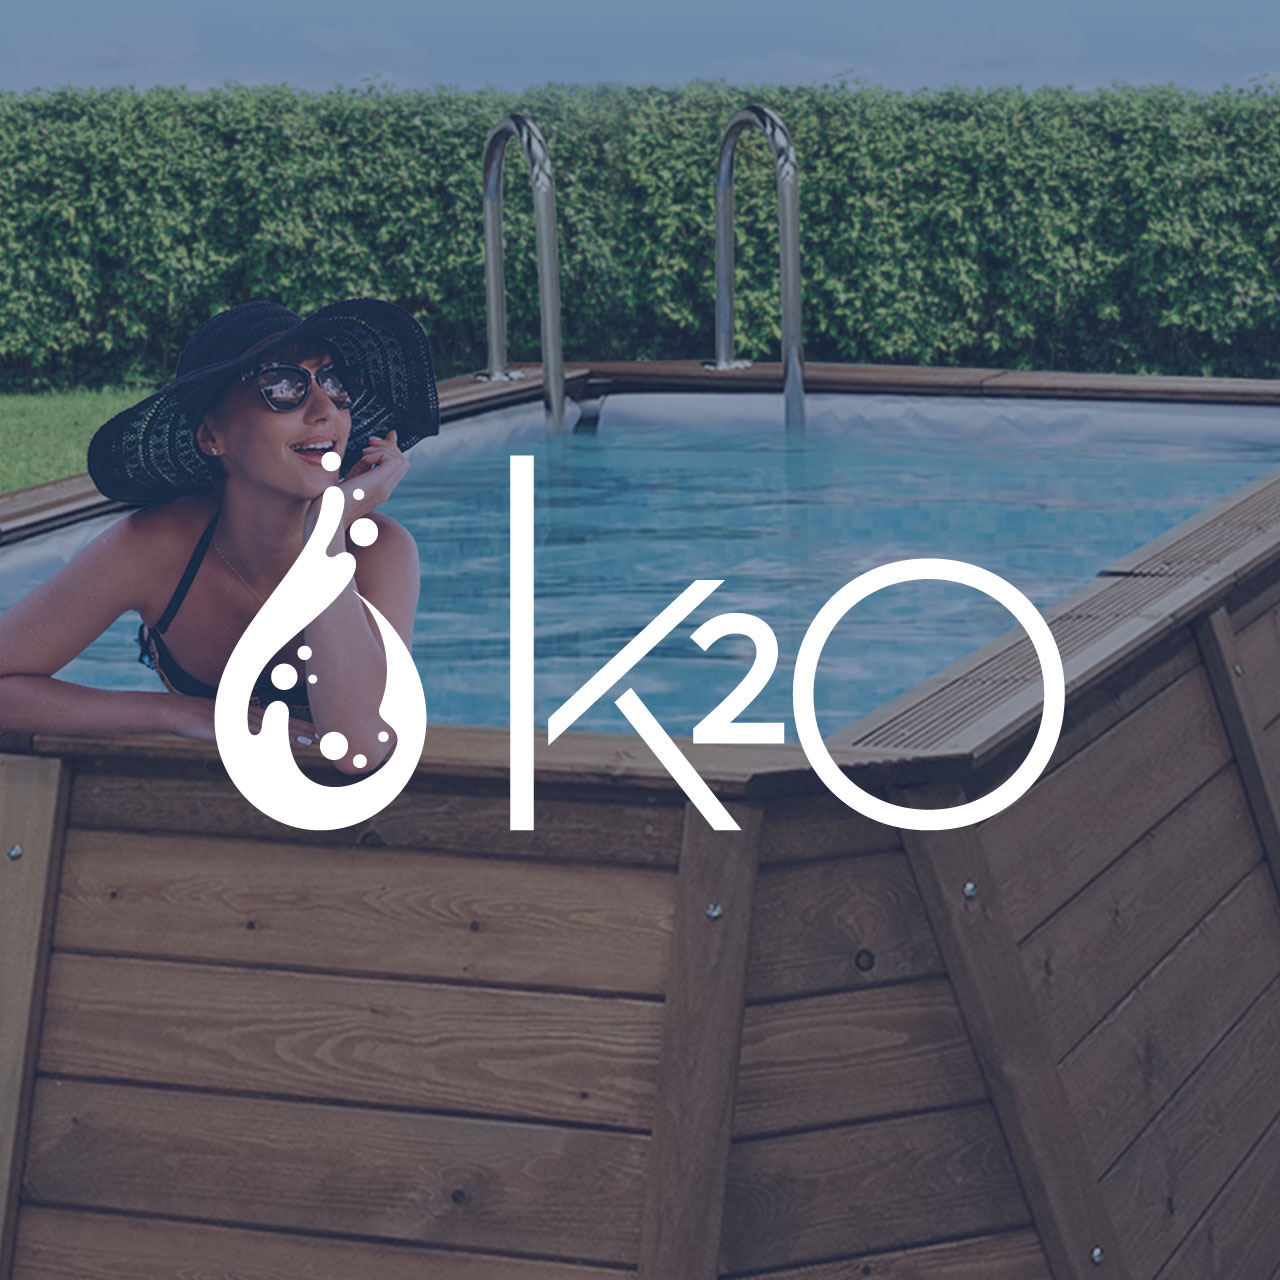 K2O: eleva el ambiente de tu jardín